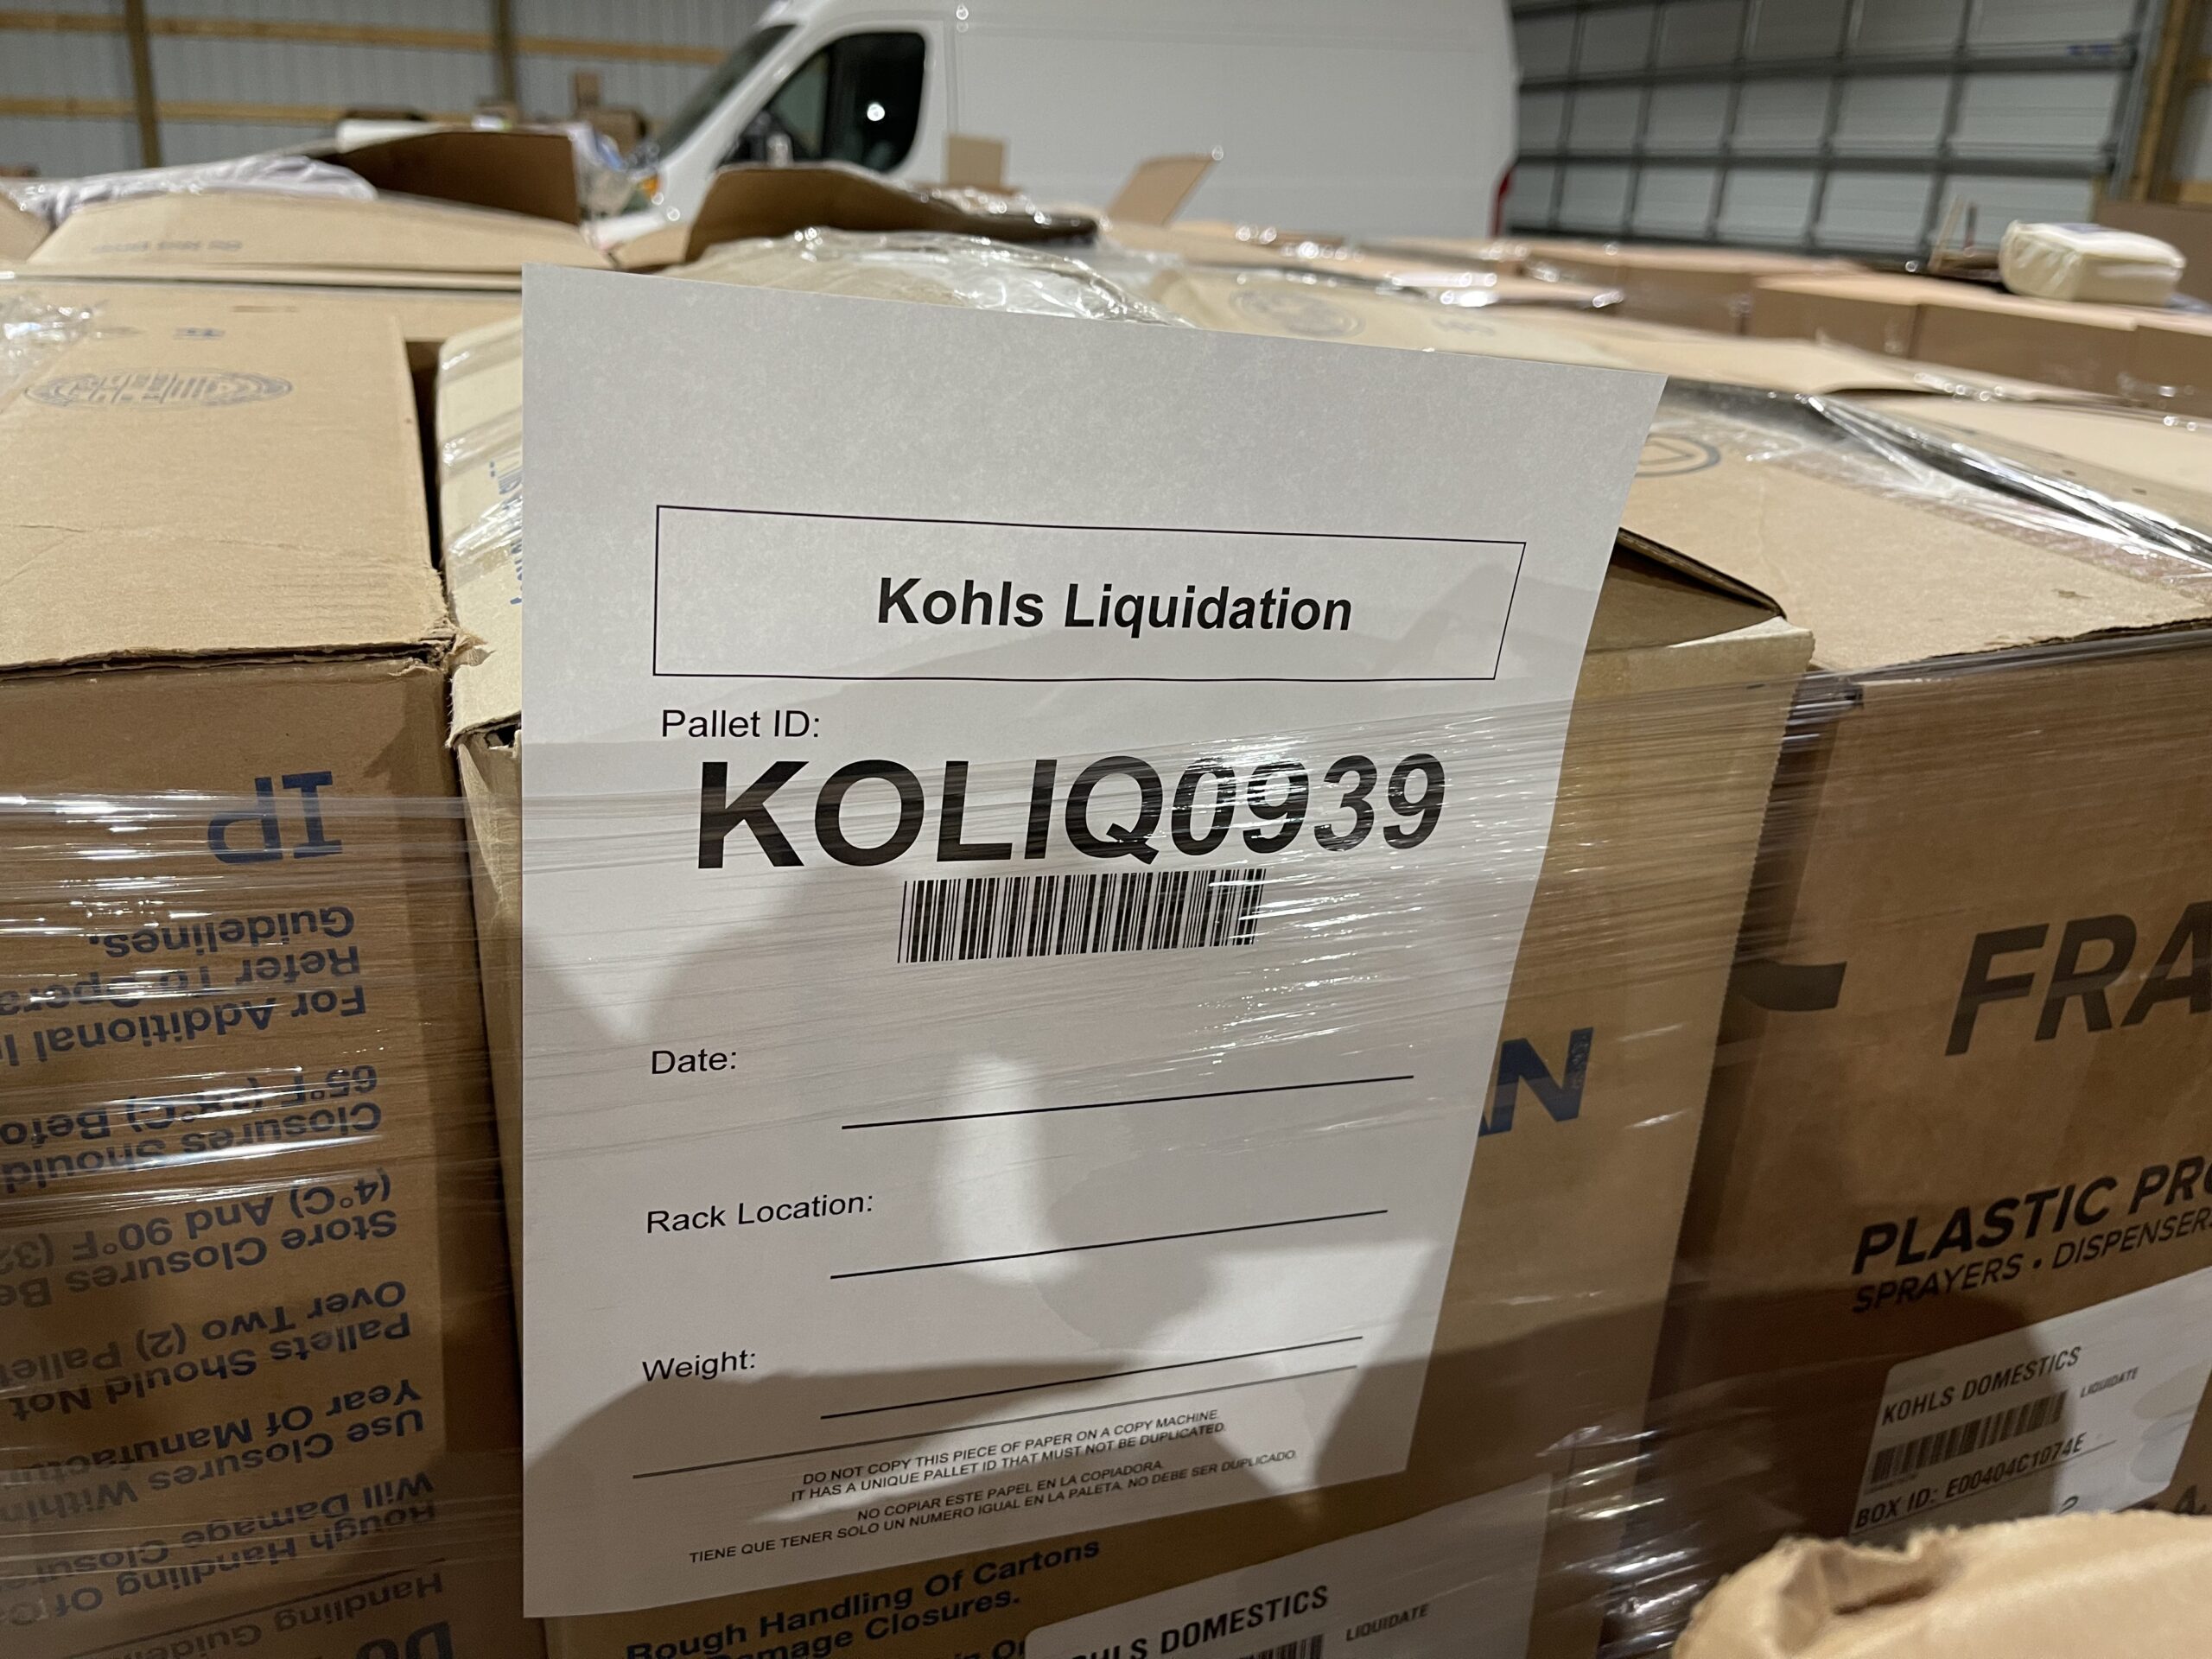 Kohls liquidation